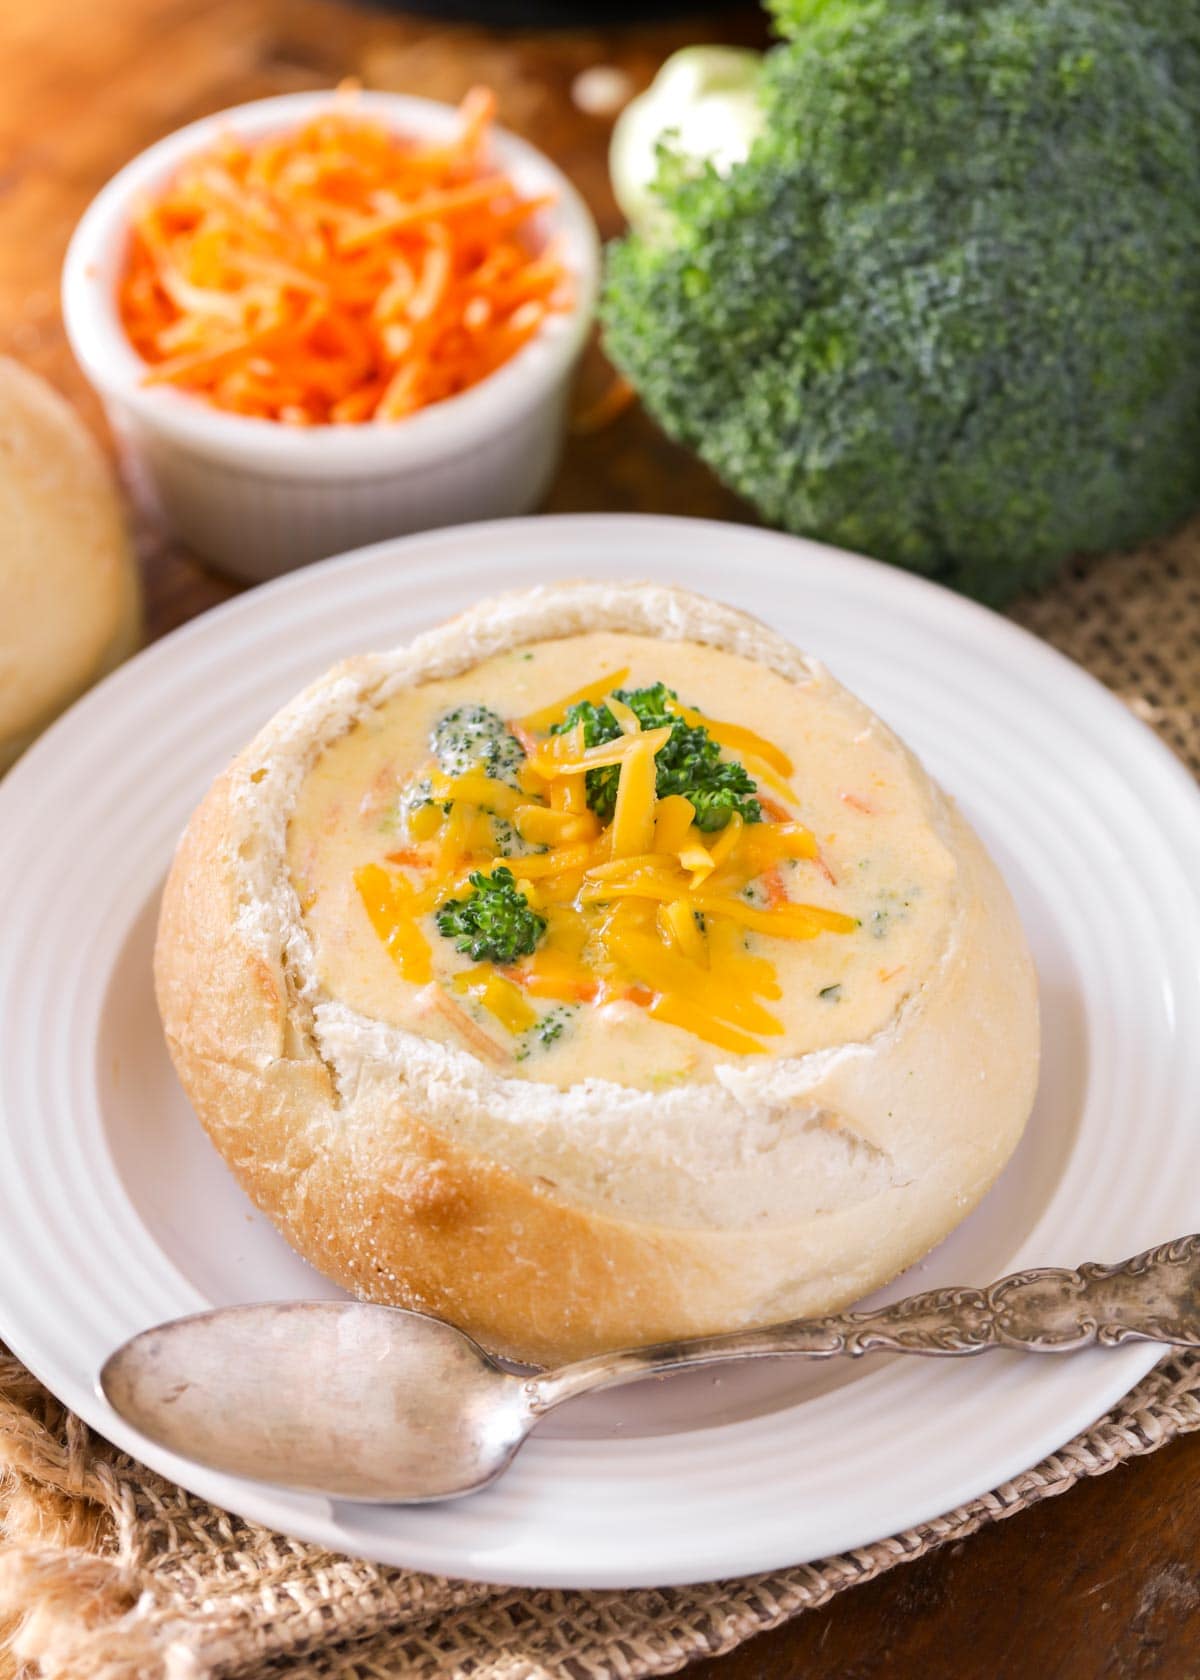 Panera Broccoli Cheddar Soup recipe in bread bowl.